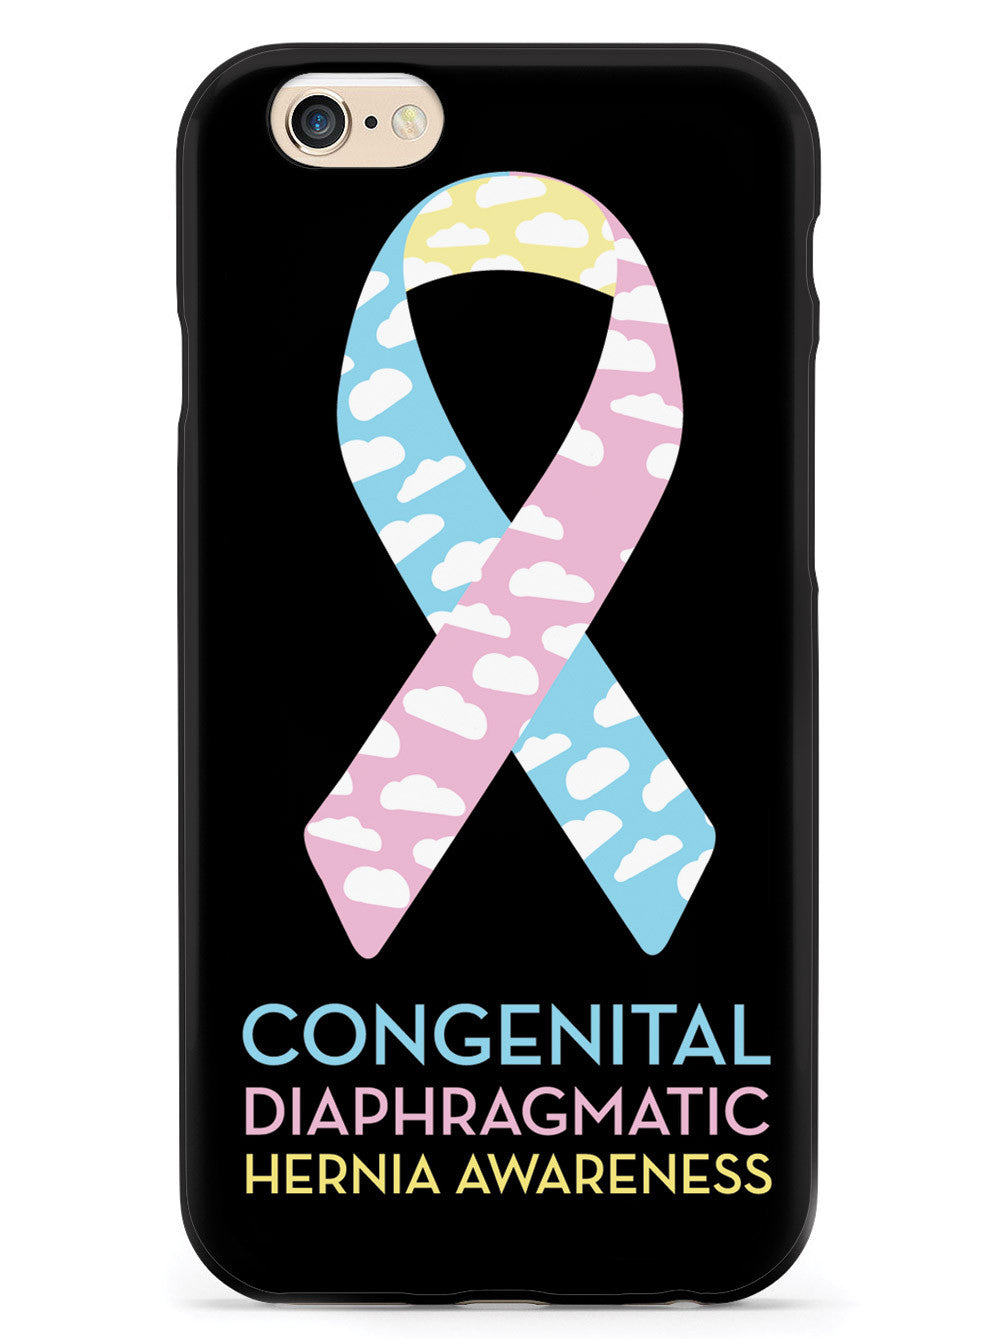 Congenital Diaphragmatic Hernia Awareness - Black Case